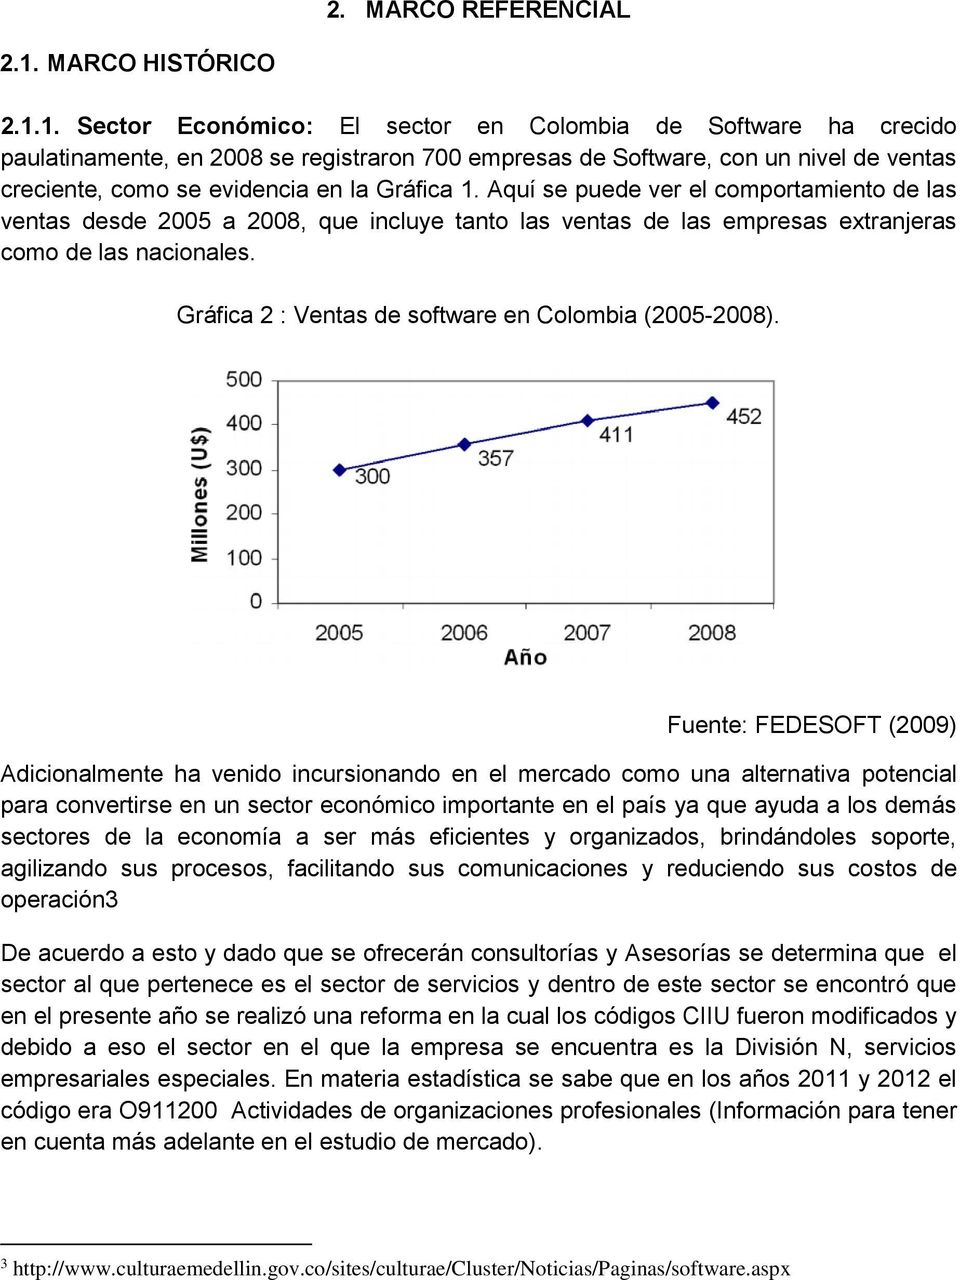 1. Sector Económico: El sector en Colombia de Software ha crecido paulatinamente, en 2008 se registraron 700 empresas de Software, con un nivel de ventas creciente, como se evidencia en la Gráfica 1.